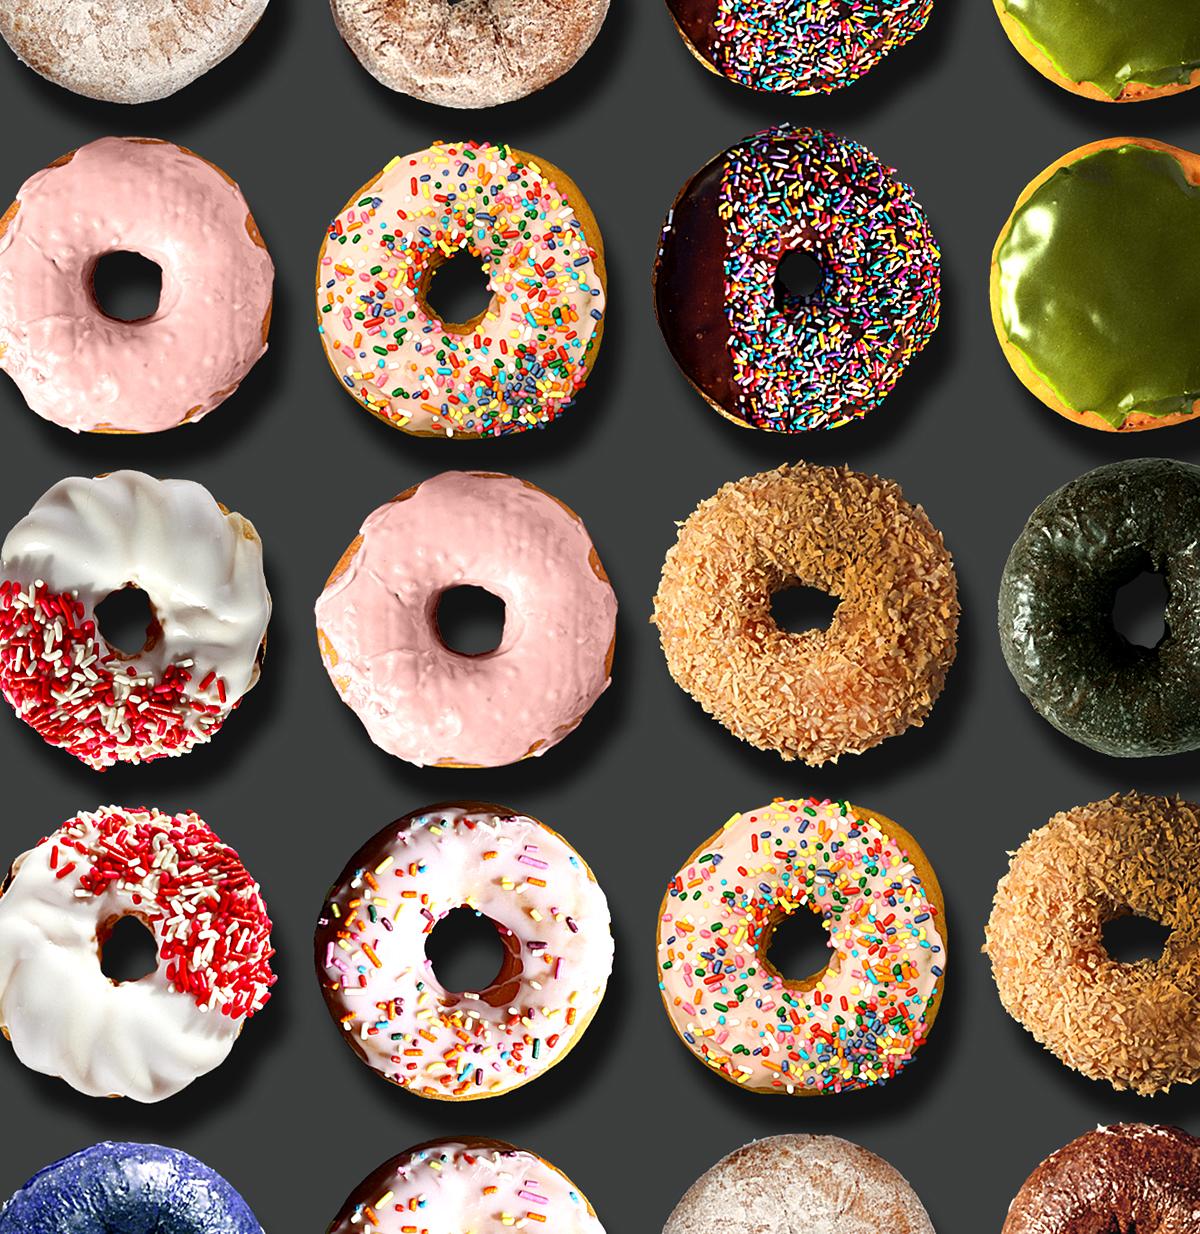 Sie haben in den sozialen Medien weltweit von den außergewöhnlichen Donut-Porträts von Candice CMC gelesen, und wir sind begeistert und stolz, ihre Arbeit zu vertreten.

Wir haben in dieser Auflistung ein Bild von einigen der weltweiten Social Media